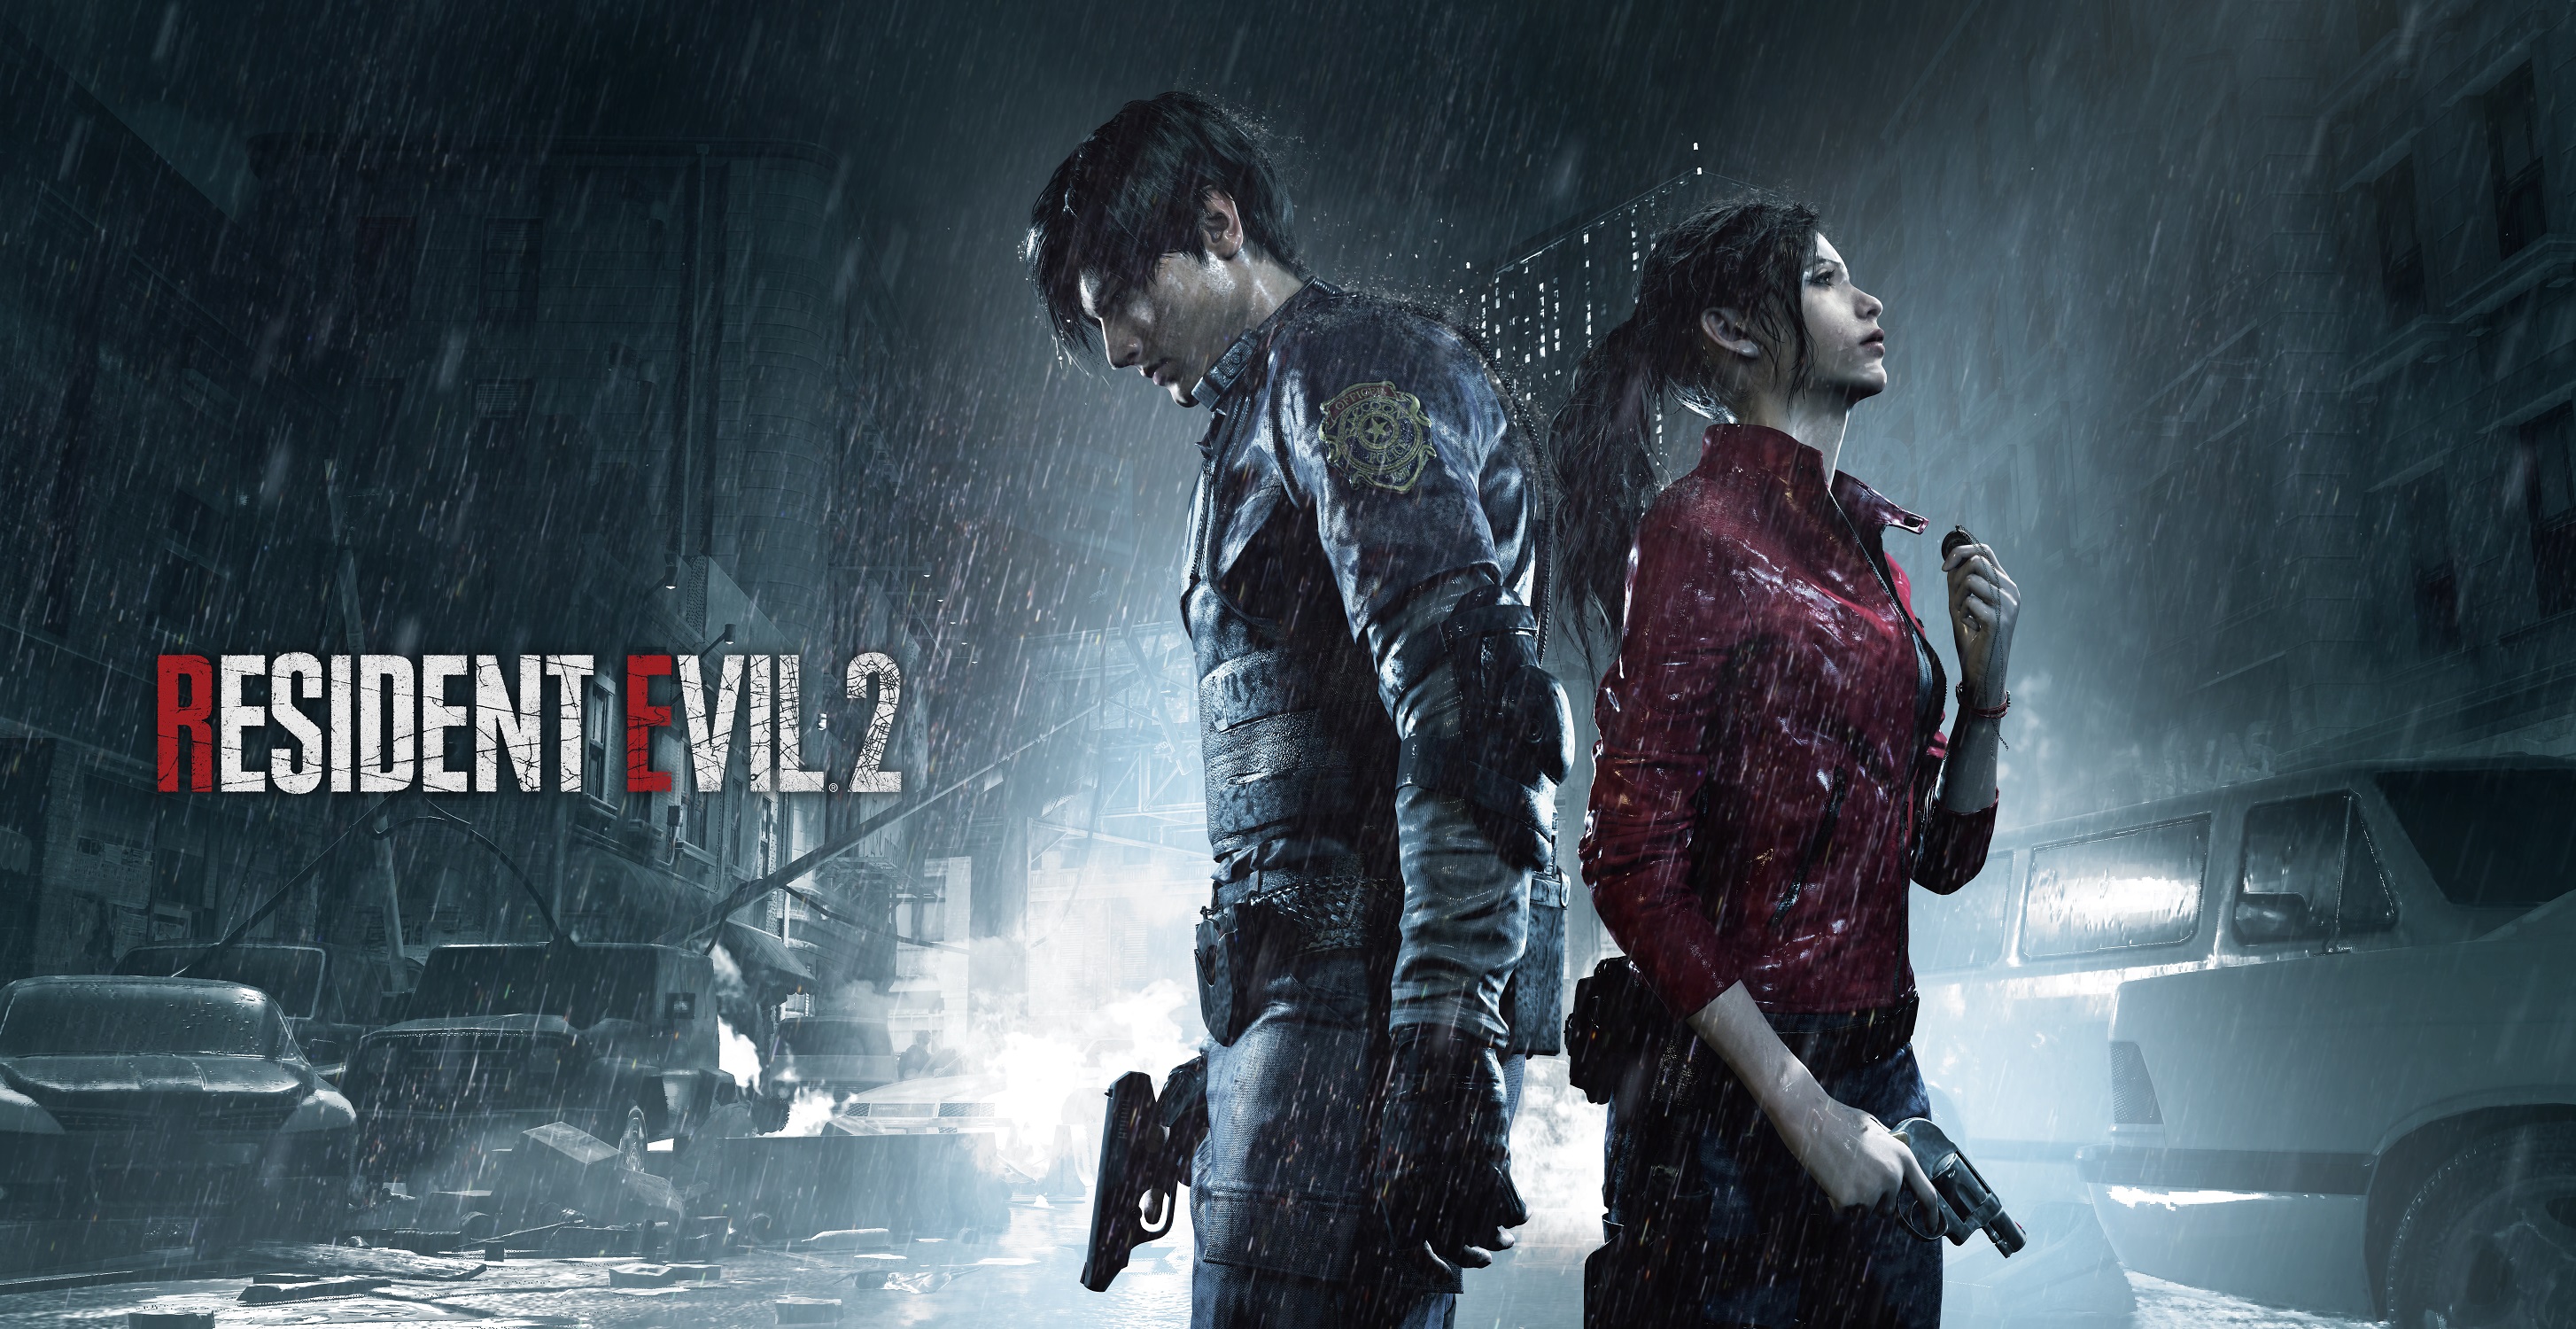 Jogamos! Nova demo de Resident Evil 2 Remake com Claire Redfield